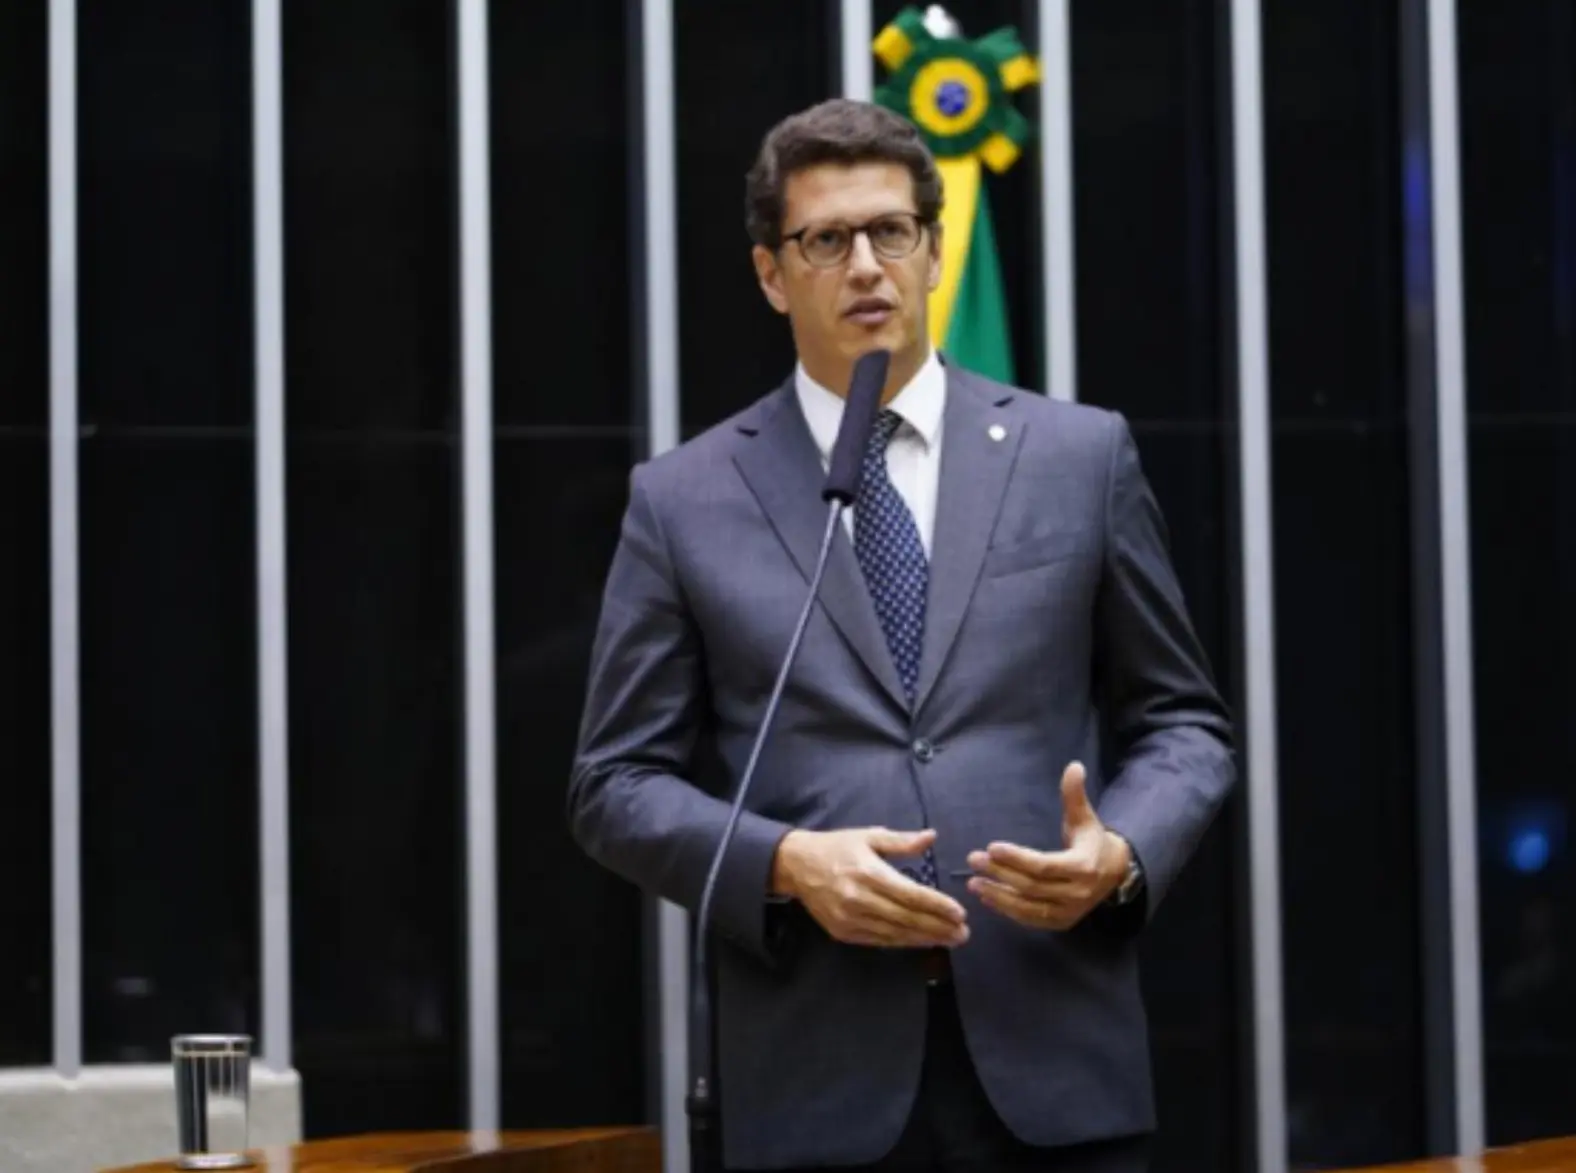 Salles expõe crimes, questionando legitimidade do movimento e impactando debate sobre reforma agrária no Brasil